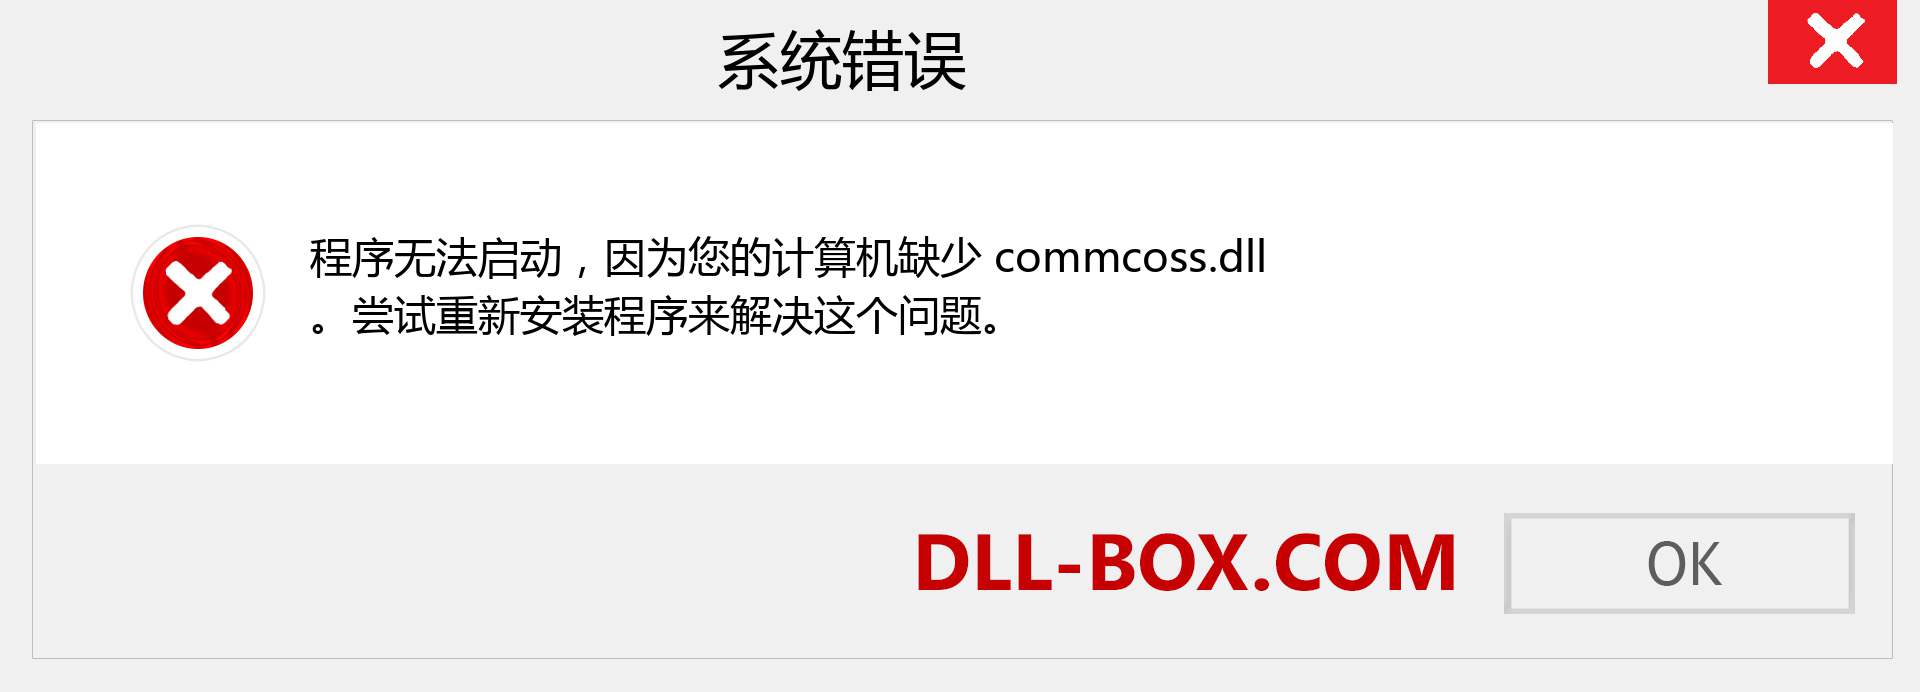 commcoss.dll 文件丢失？。 适用于 Windows 7、8、10 的下载 - 修复 Windows、照片、图像上的 commcoss dll 丢失错误